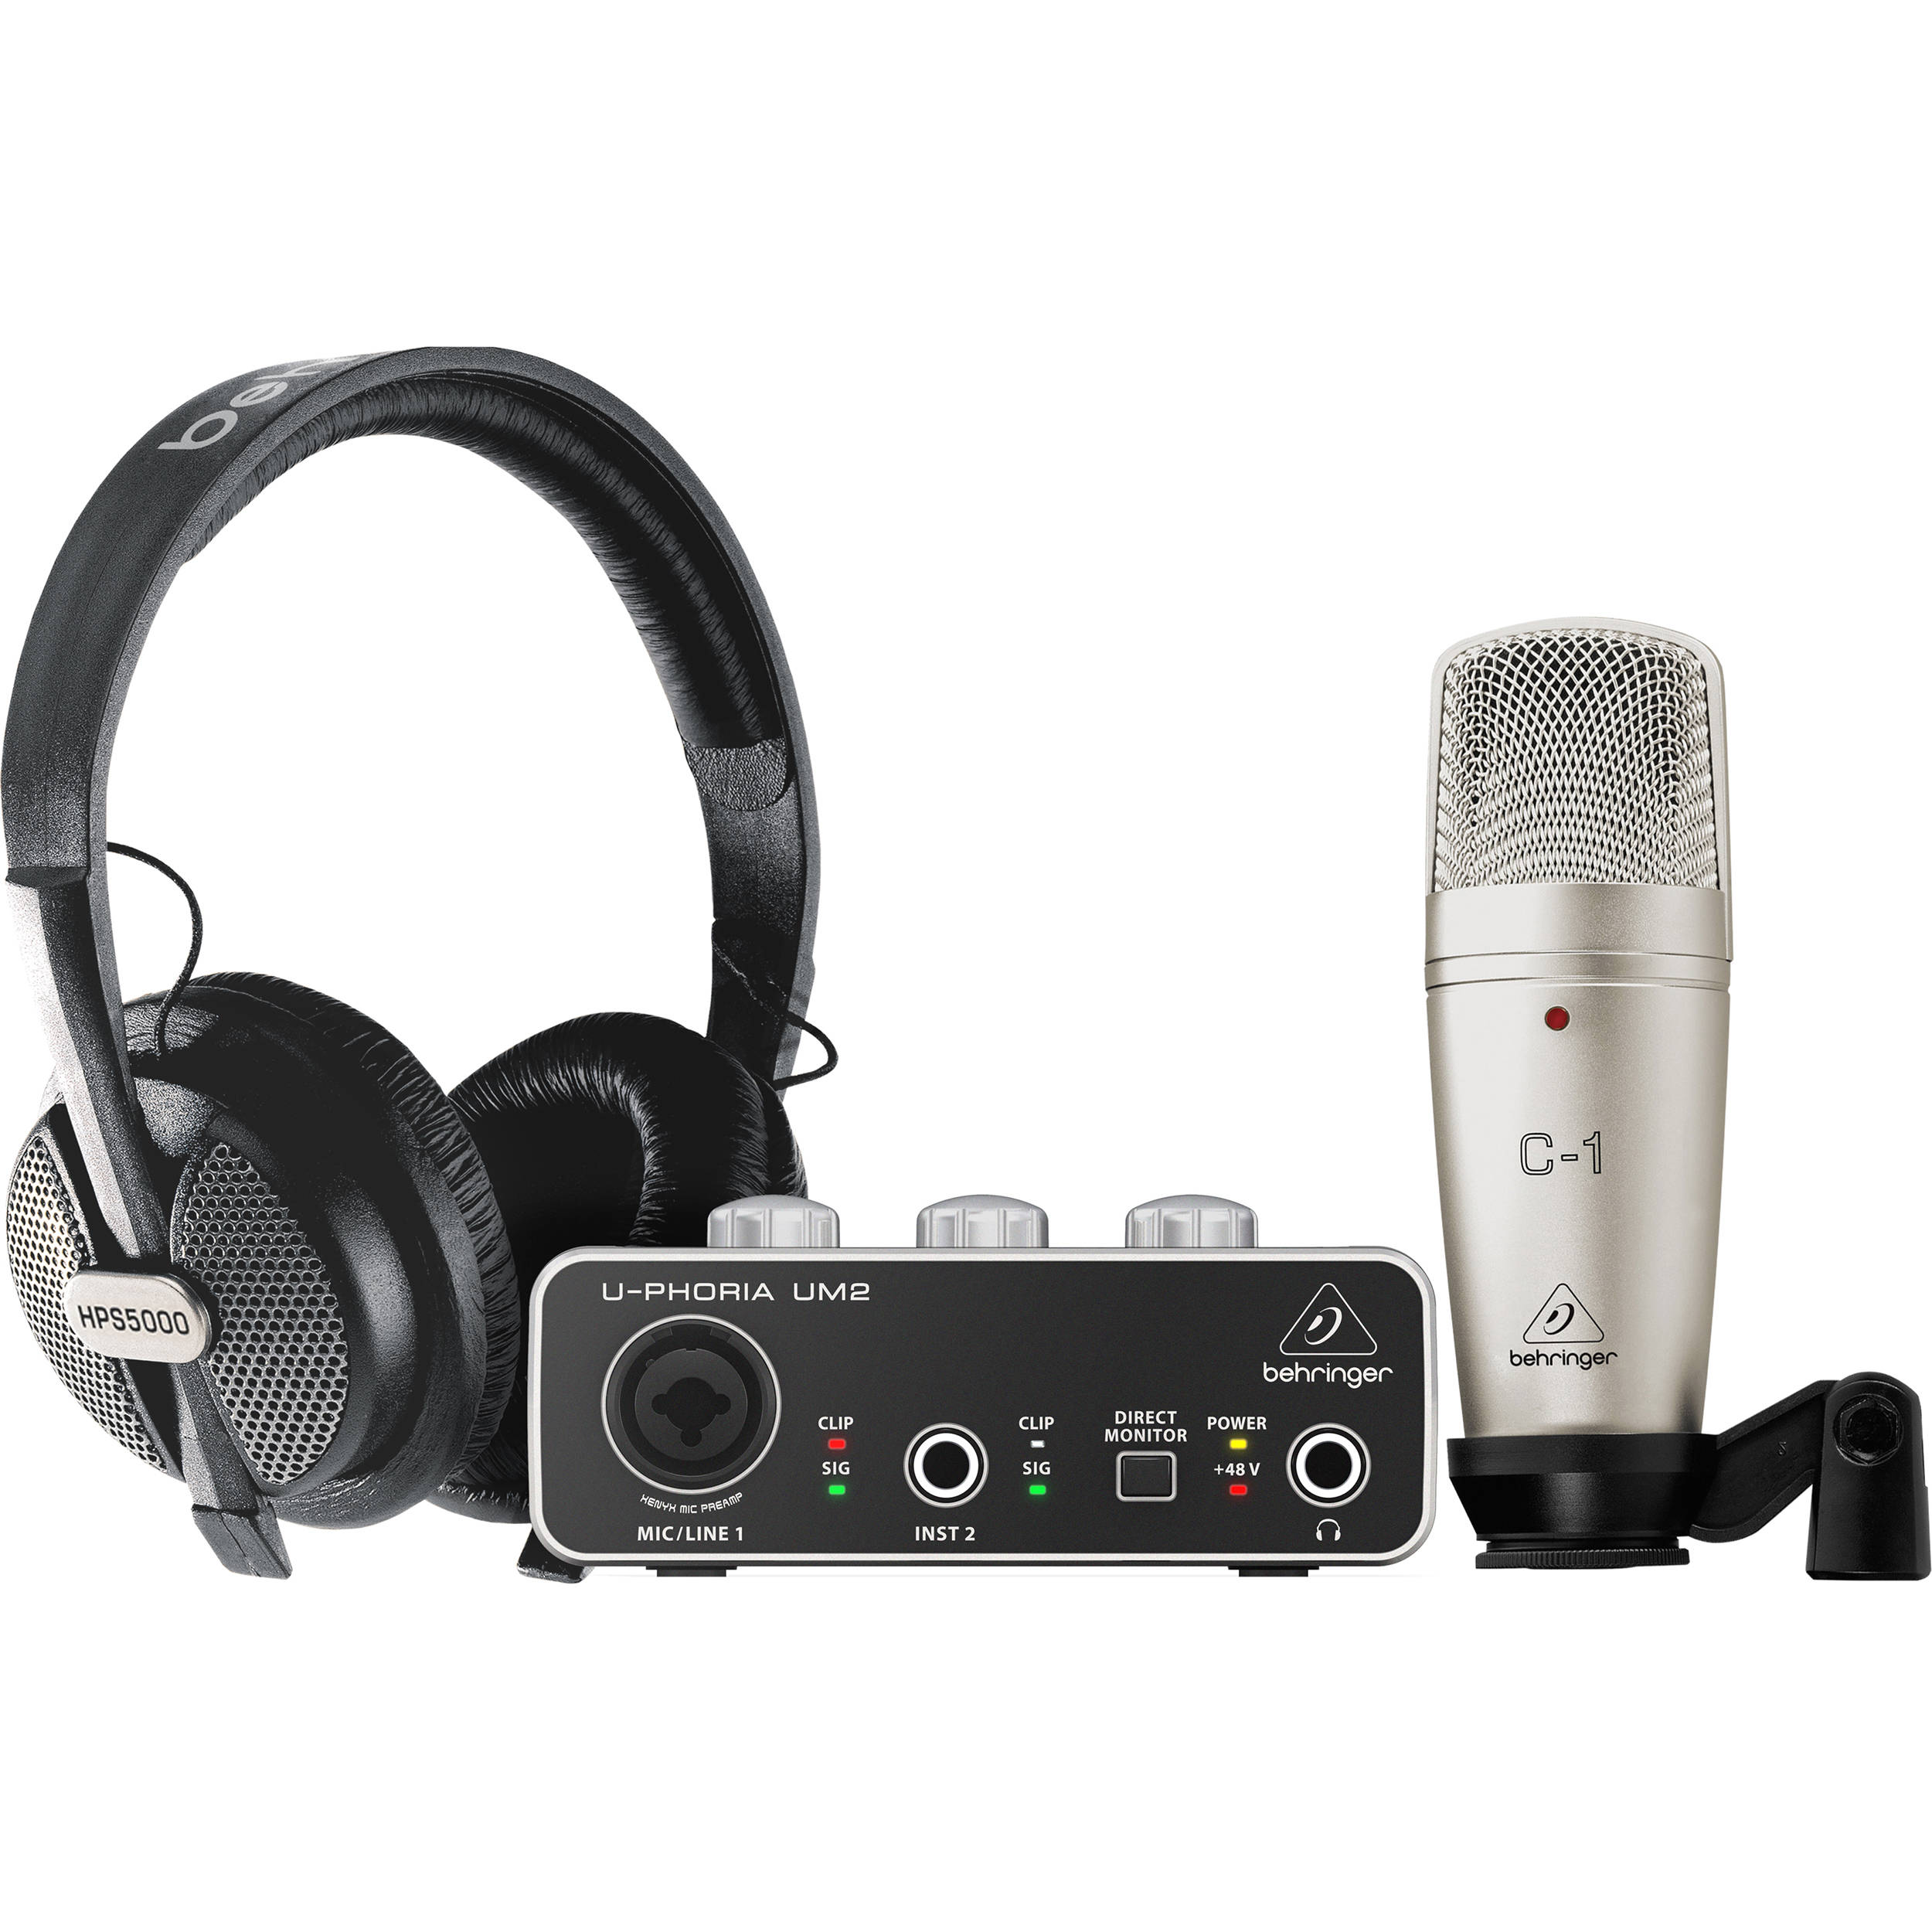 wireless headphones for studio recording